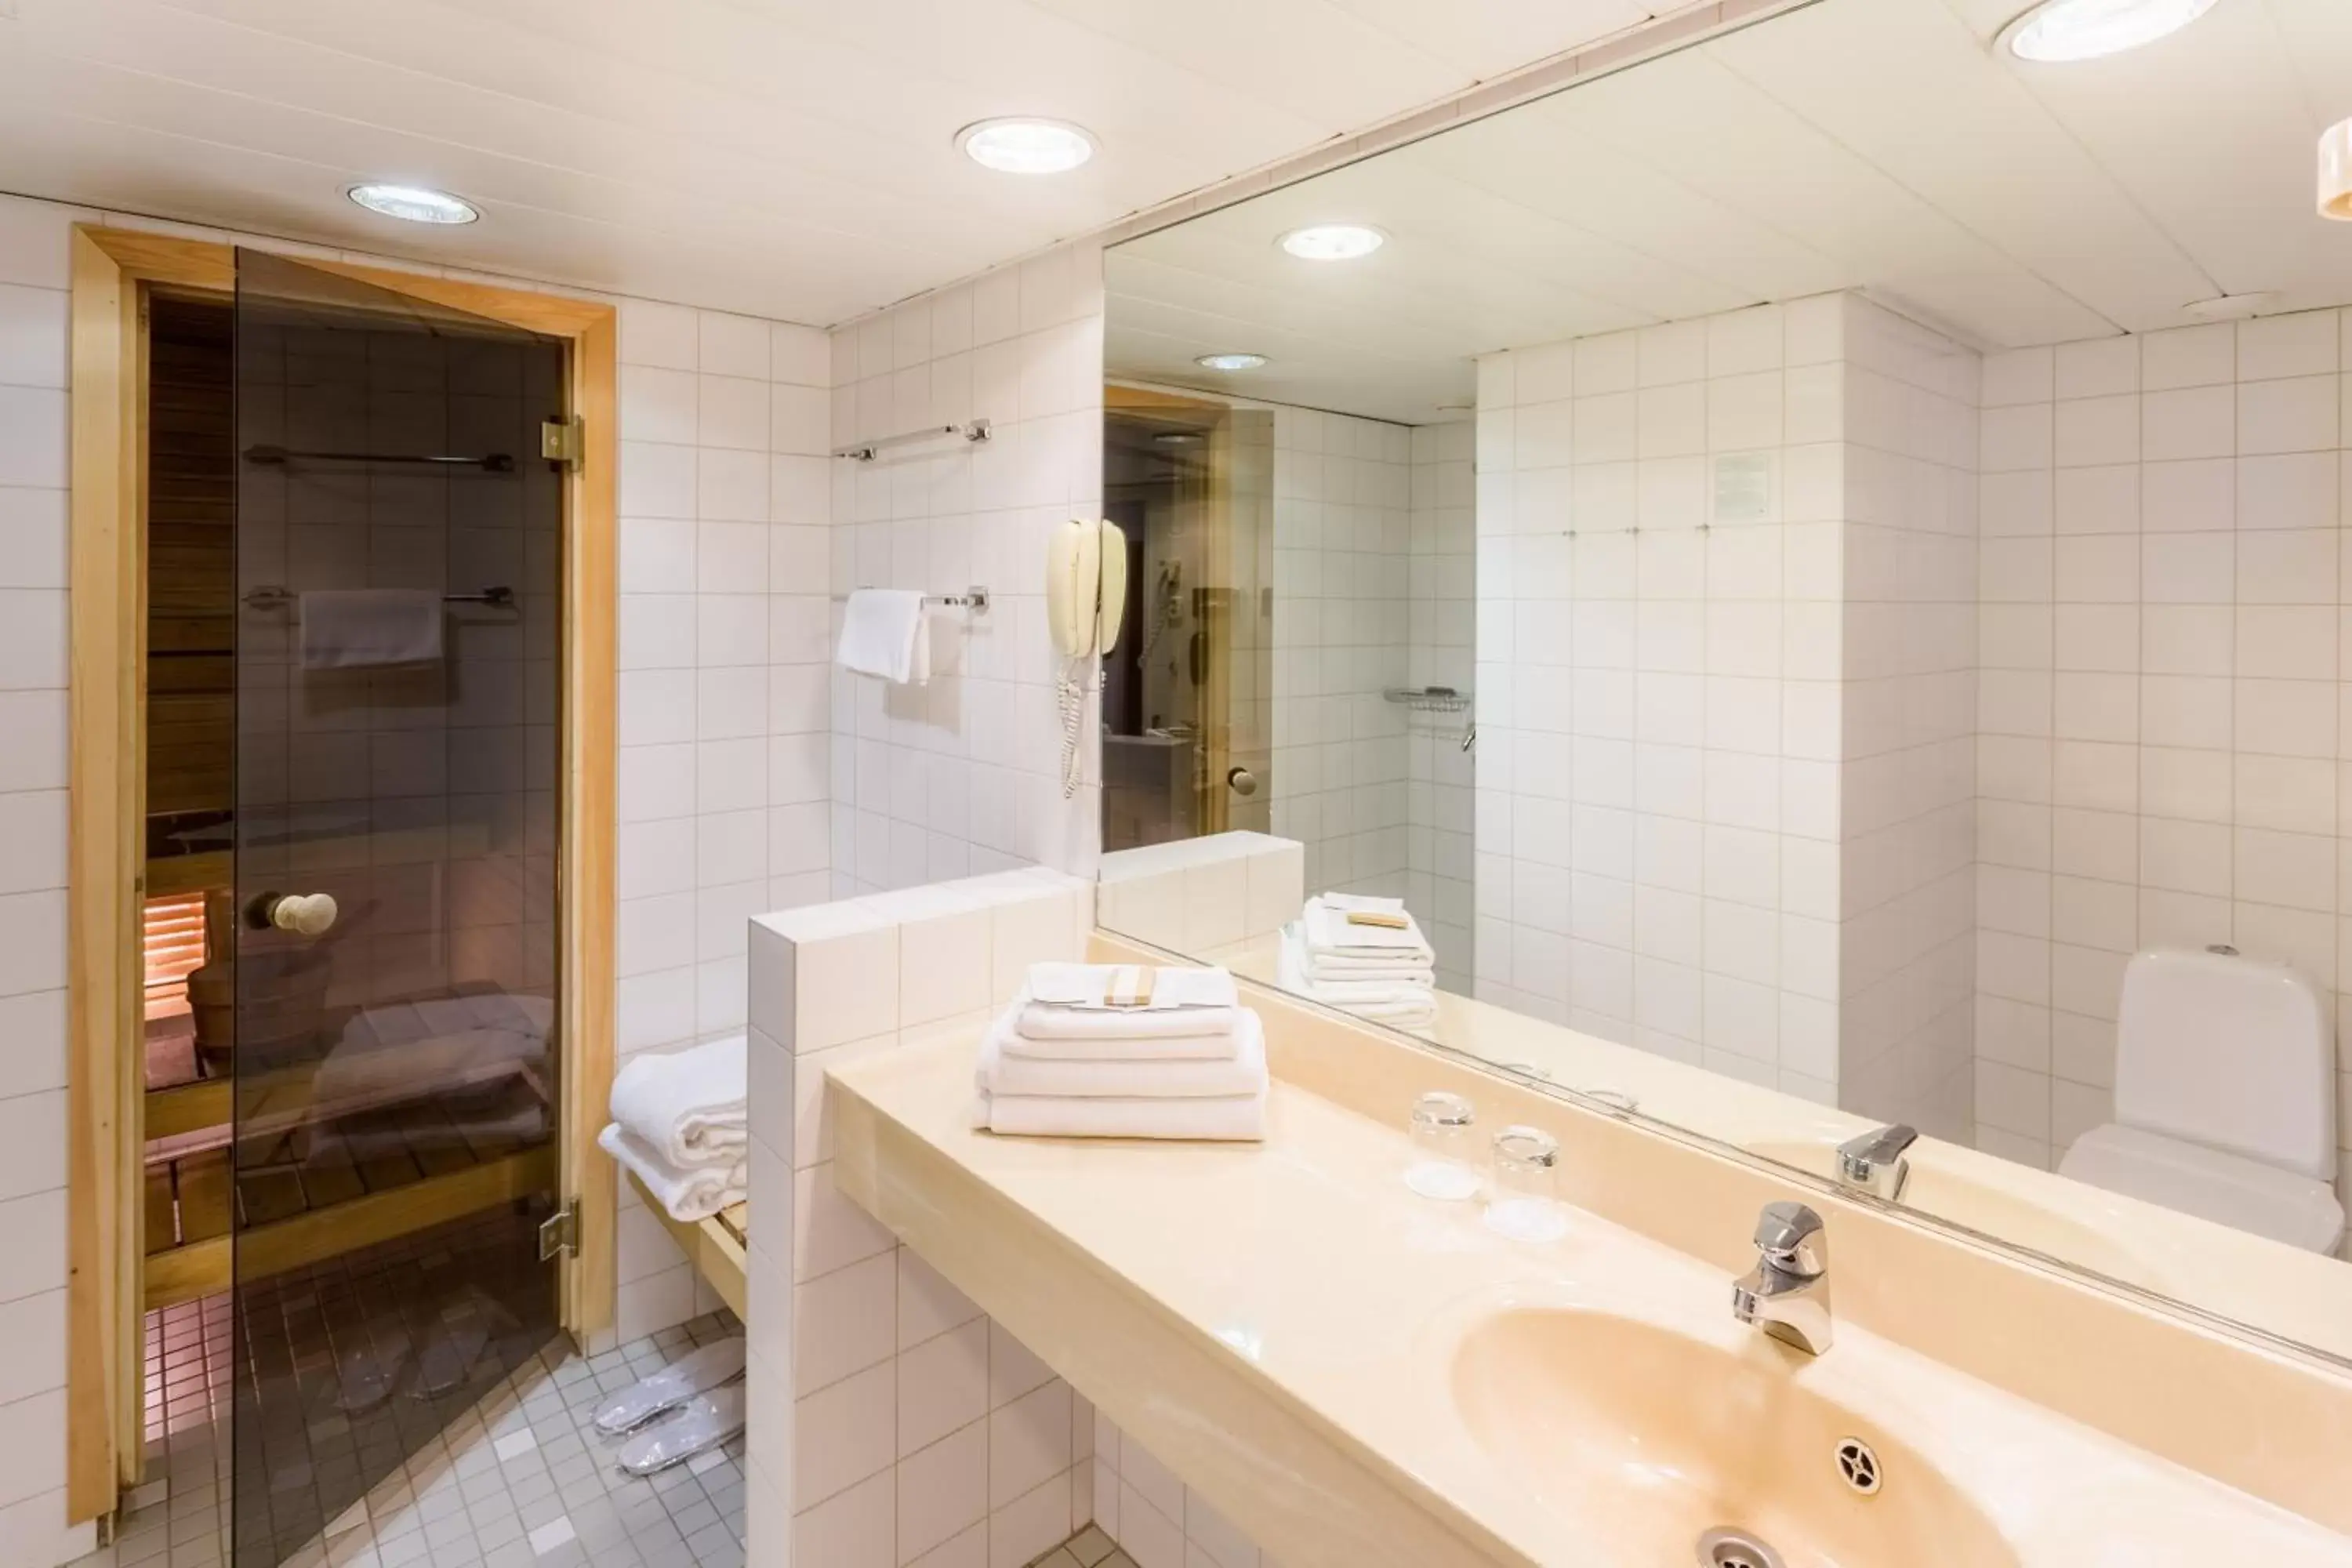 Bathroom in Original Sokos Hotel Viru